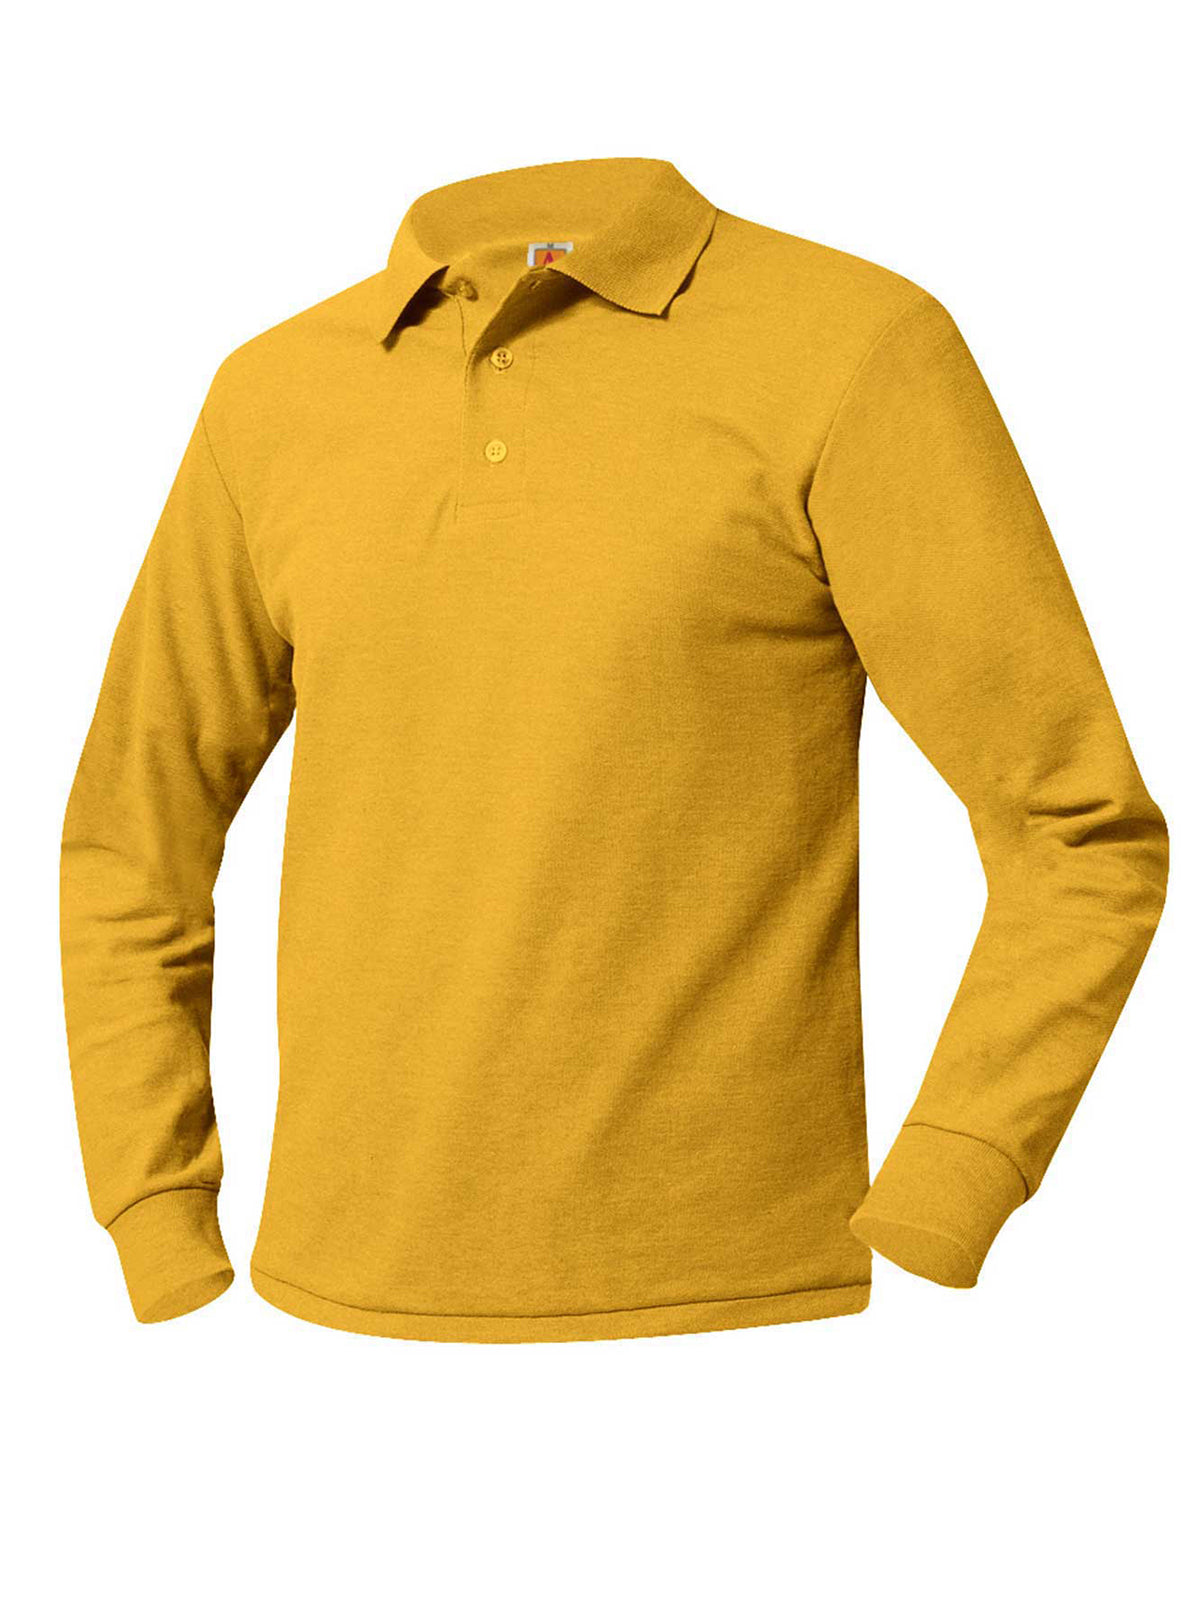 Unisex Long Sleeve Knit Shirt - 8766 - Tulane Gold